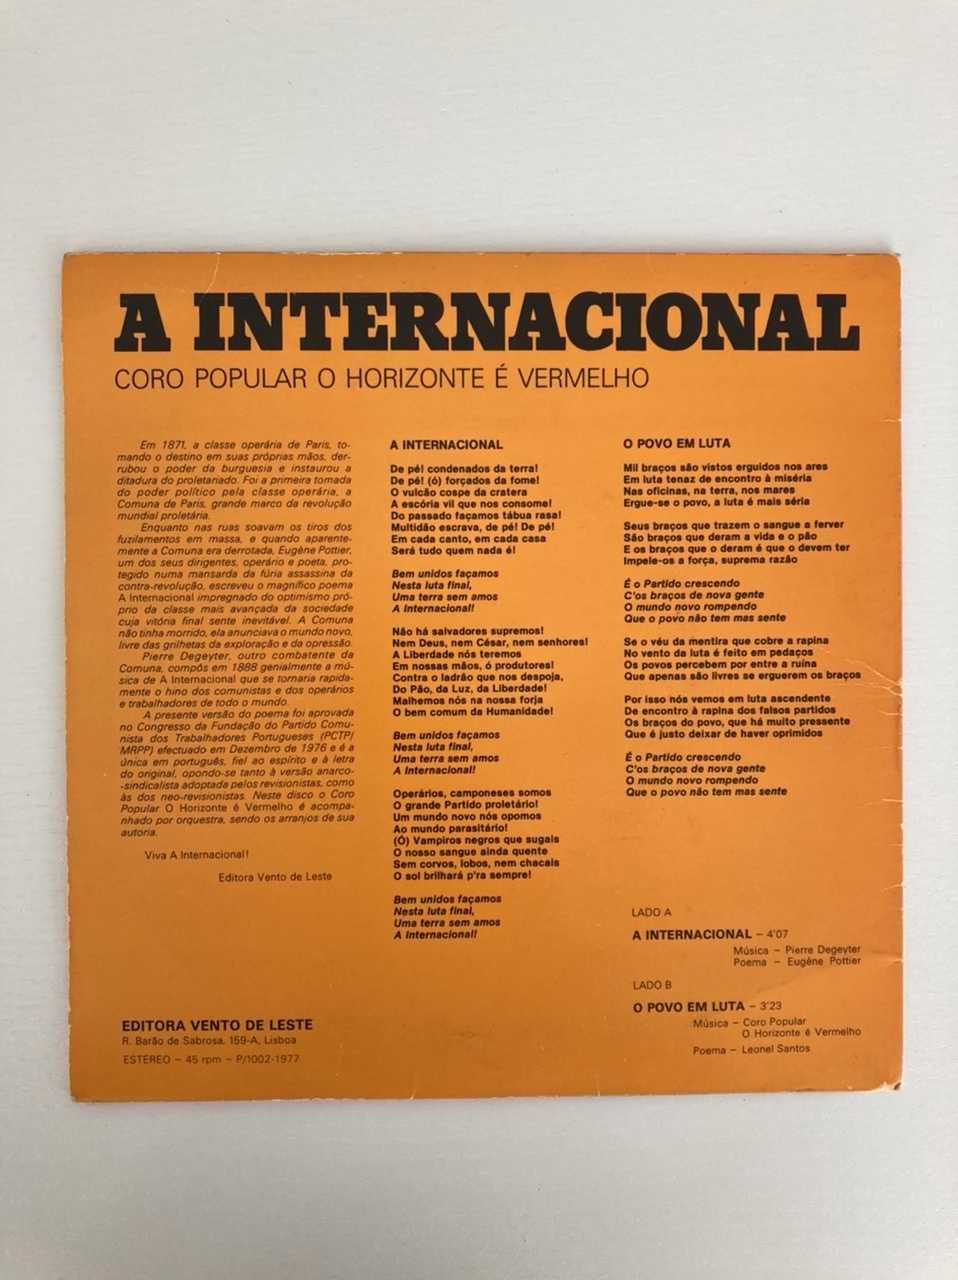 Disco Vinil Coro Popular «O Horizonte É Vermelho» – A Internacional